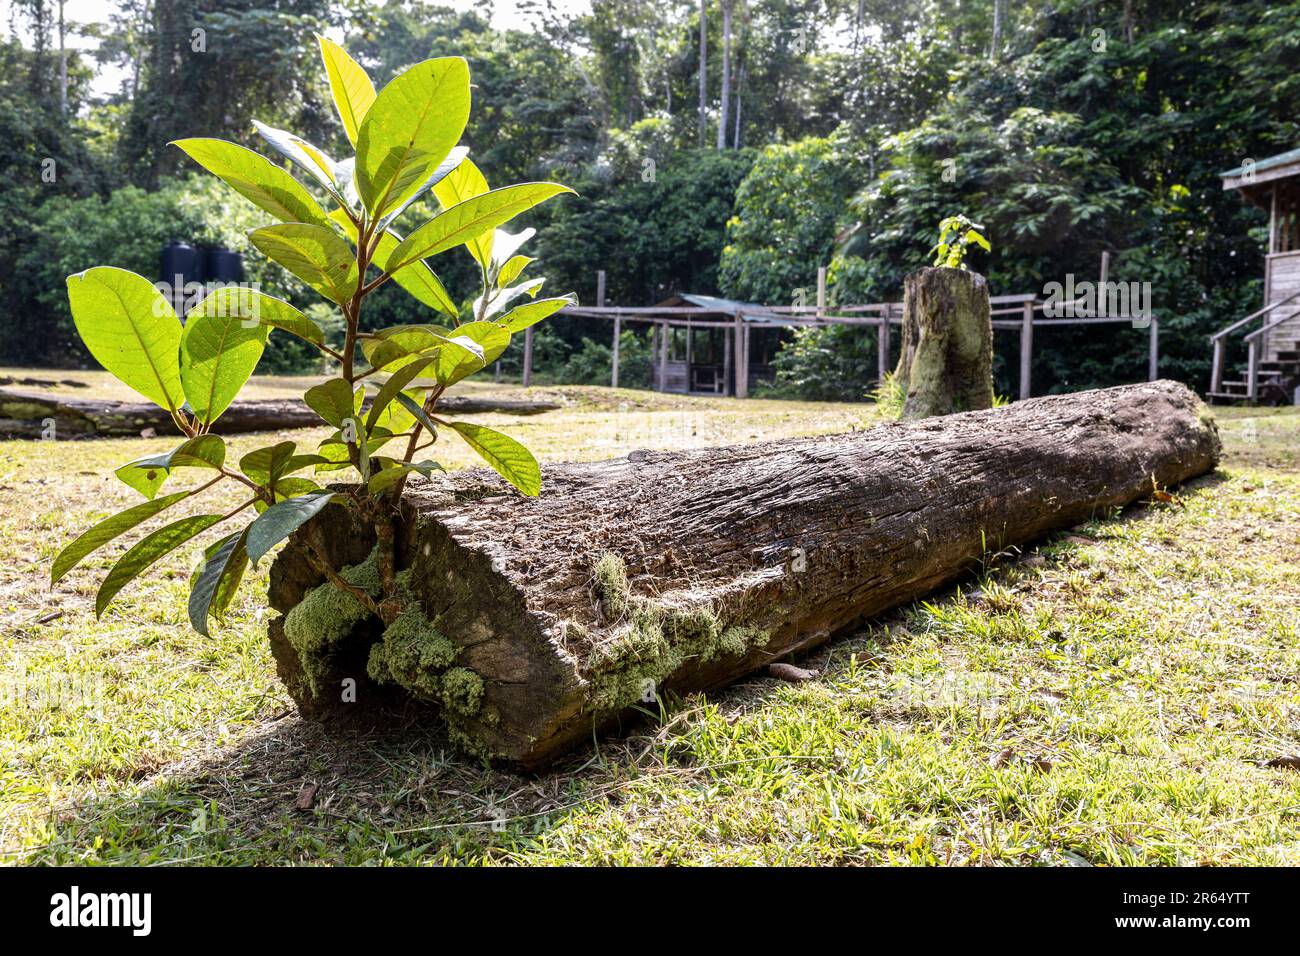 Leben nach dem Tod: Moos und neue Pflanzen wachsen auf einem toten Baumstamm, IIwokrama Regenwald, Potaro-Siparuni, Guyana Stockfoto